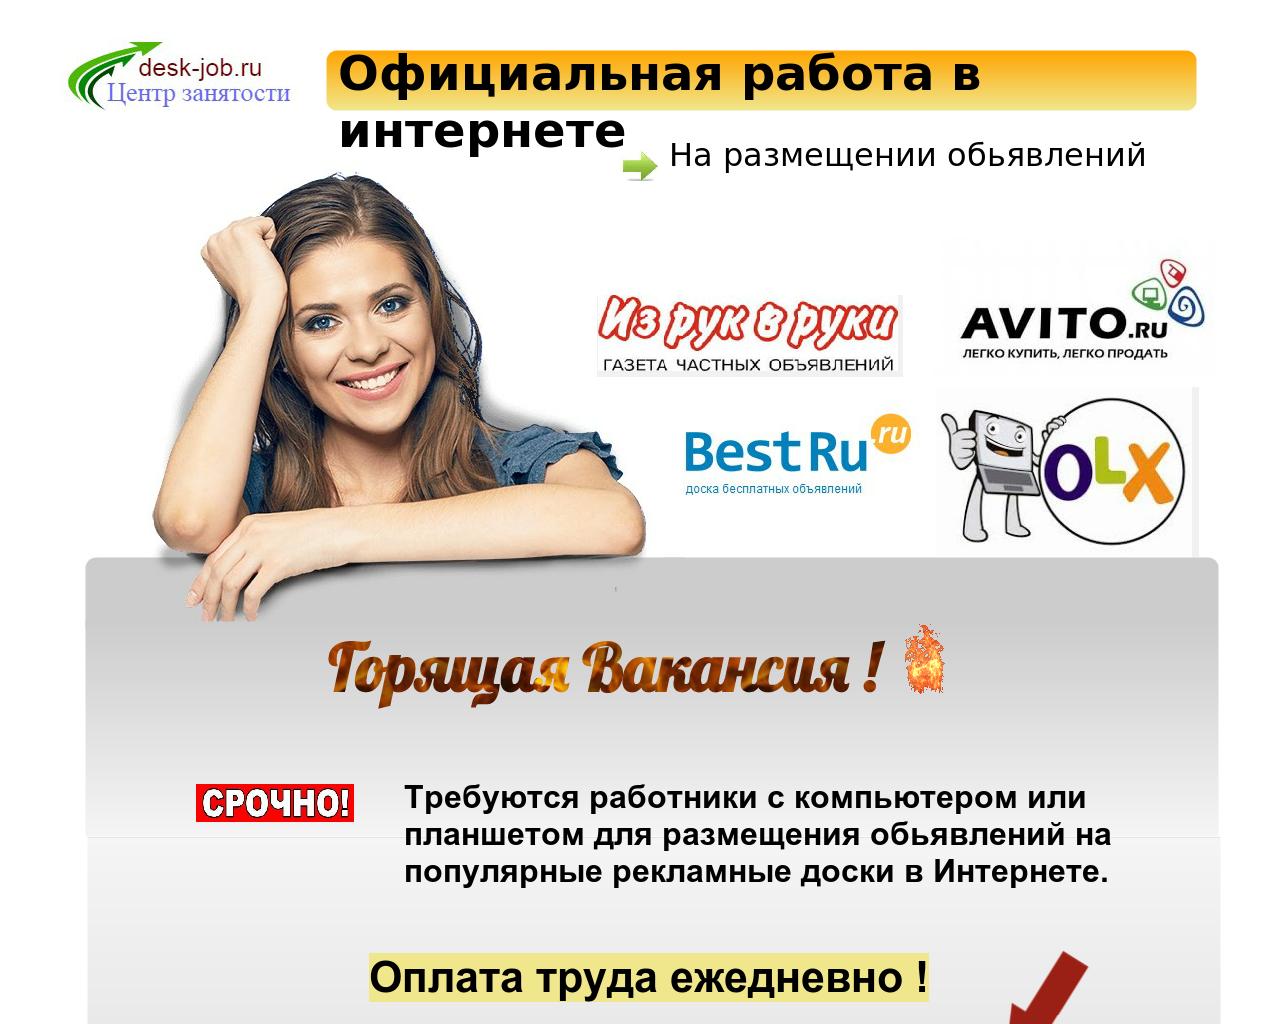 Изображение сайта desk-job.ru в разрешении 1280x1024